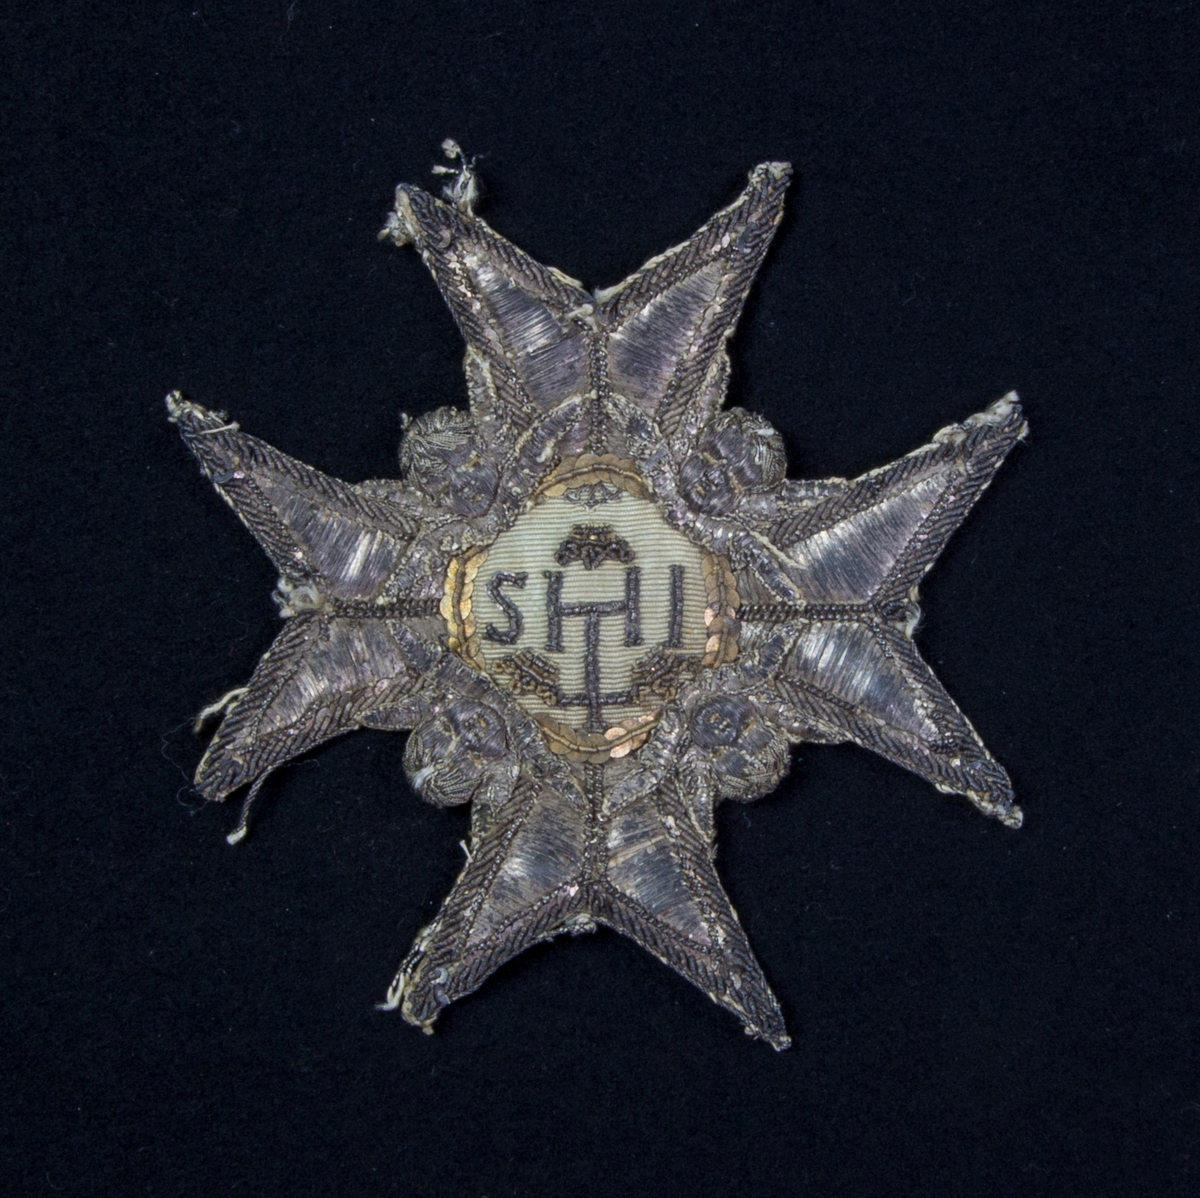 Serafimerordensstjärna med 8 uddar av ljust skinn med broderade ornament av silvertråd, såsom änglahuvuden med mera. I centrum IHS broderat på siden omgivet av paljetter.